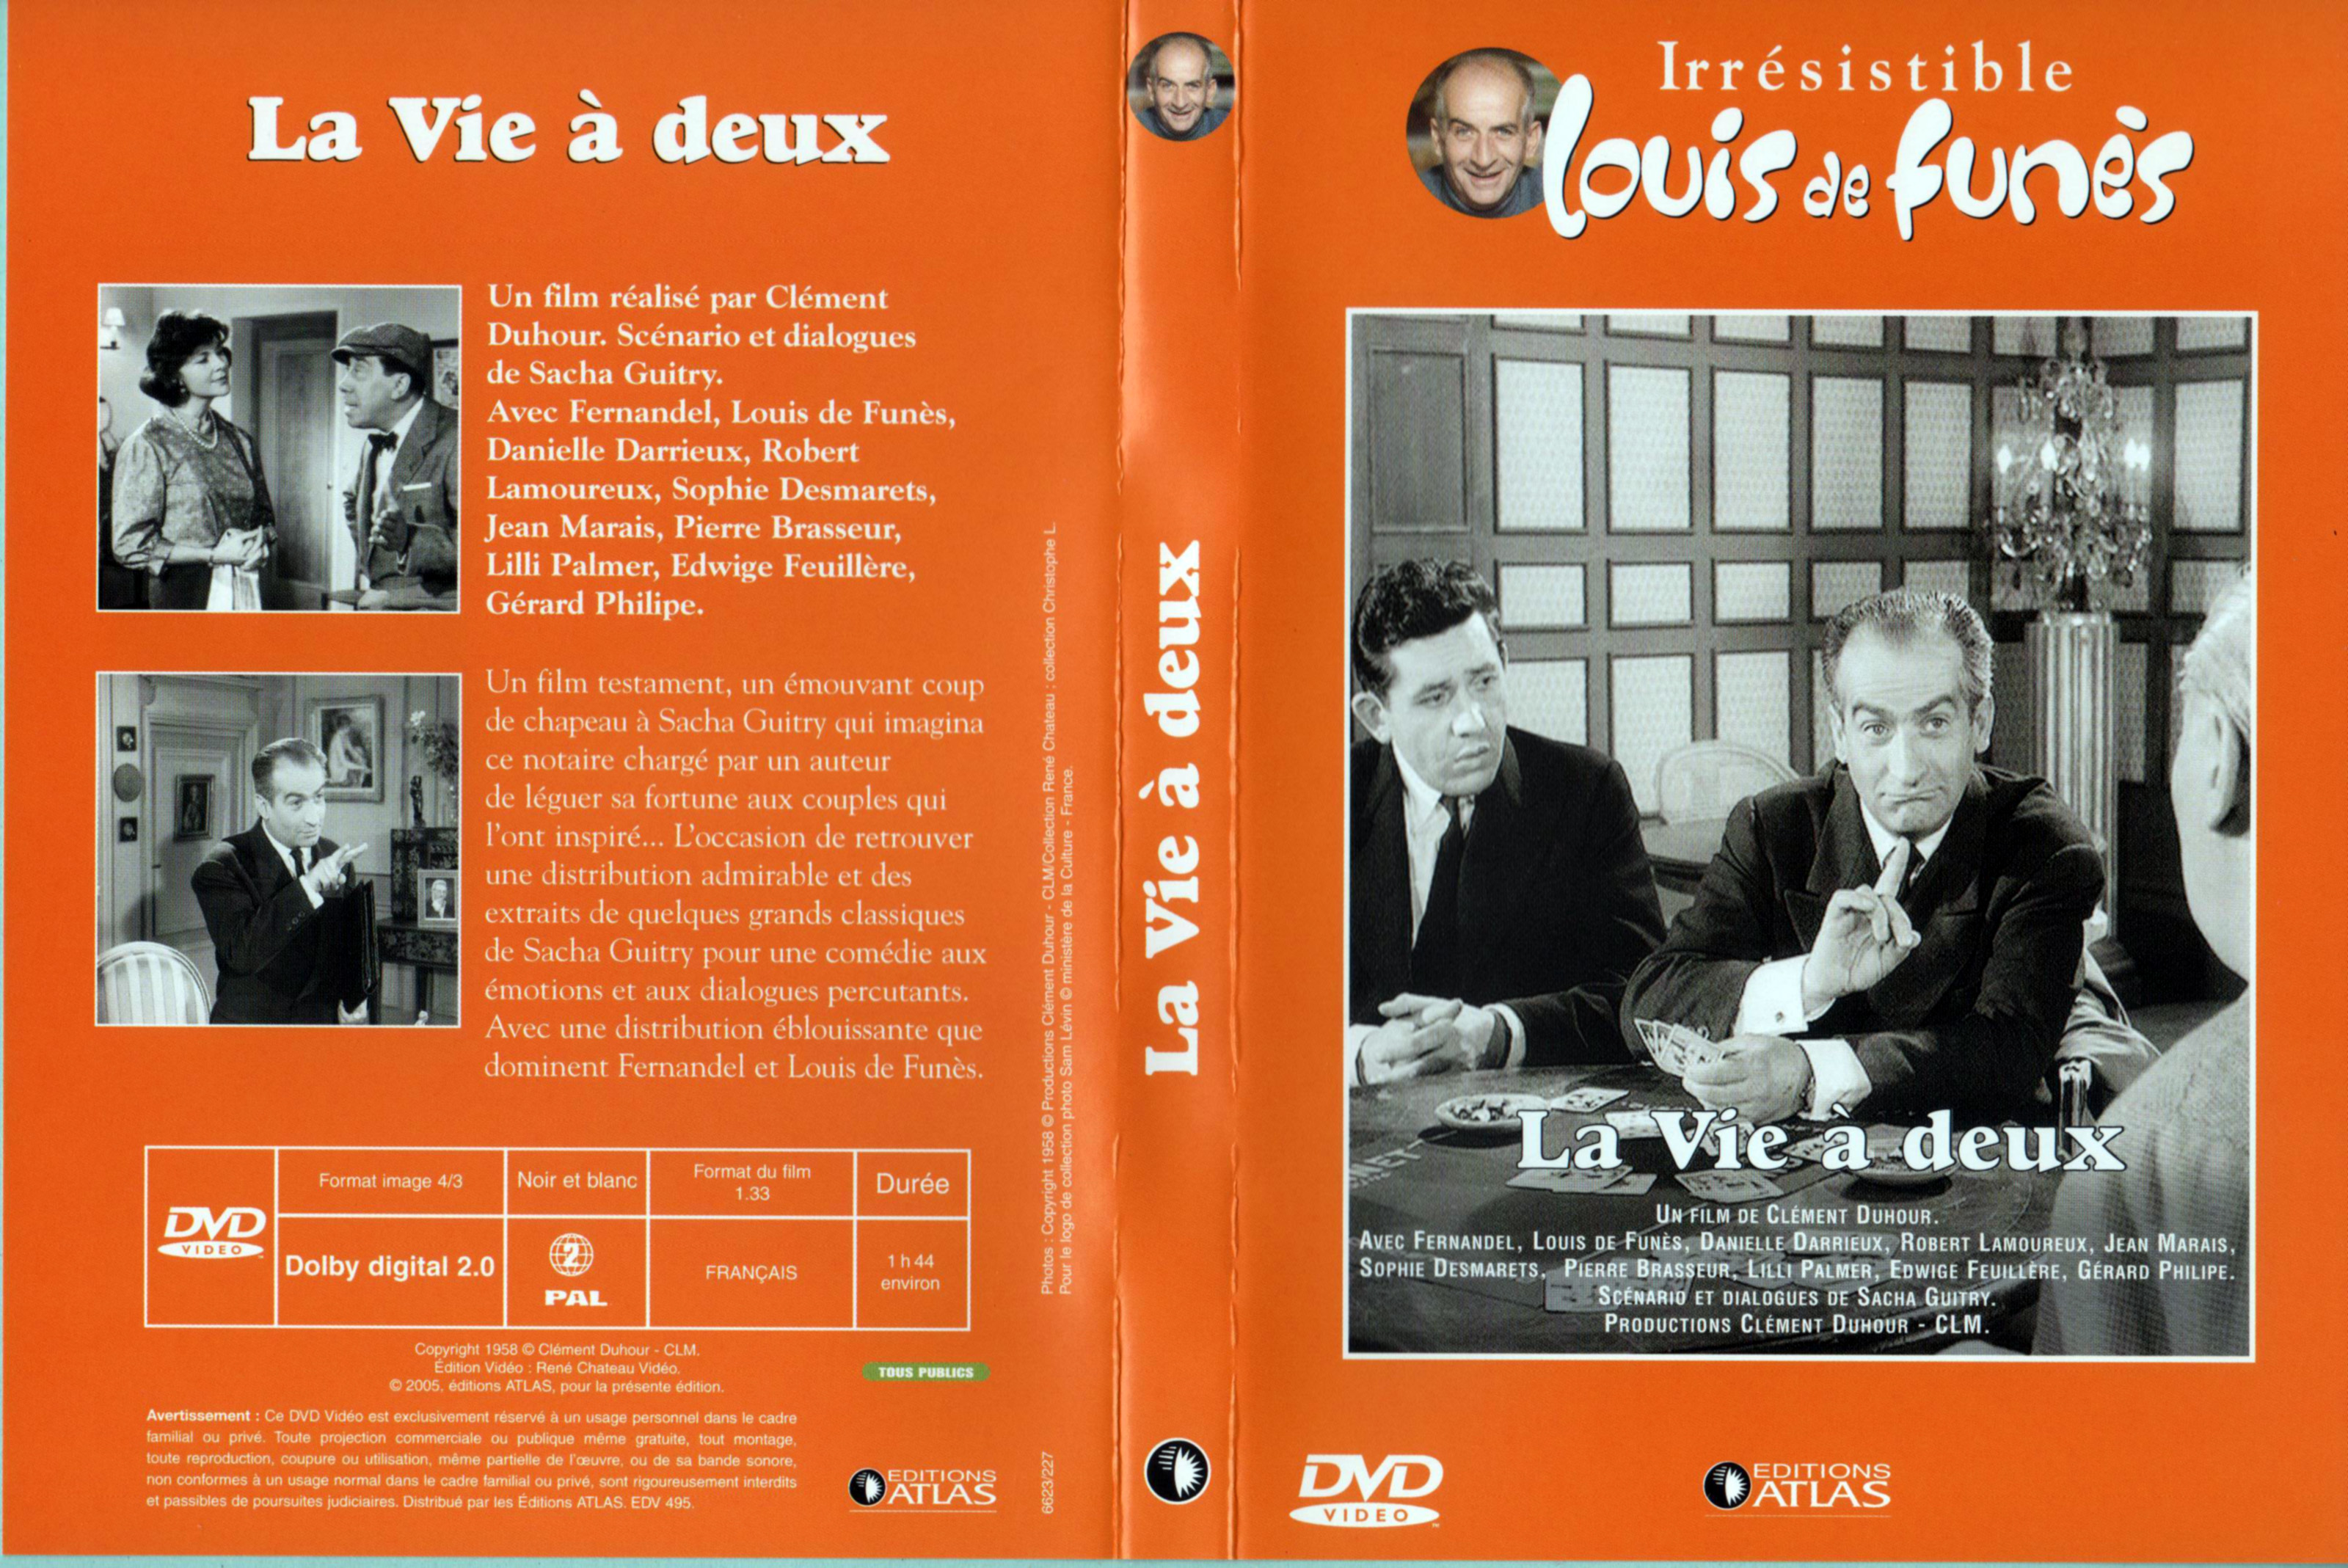 Jaquette DVD La vie a deux v2